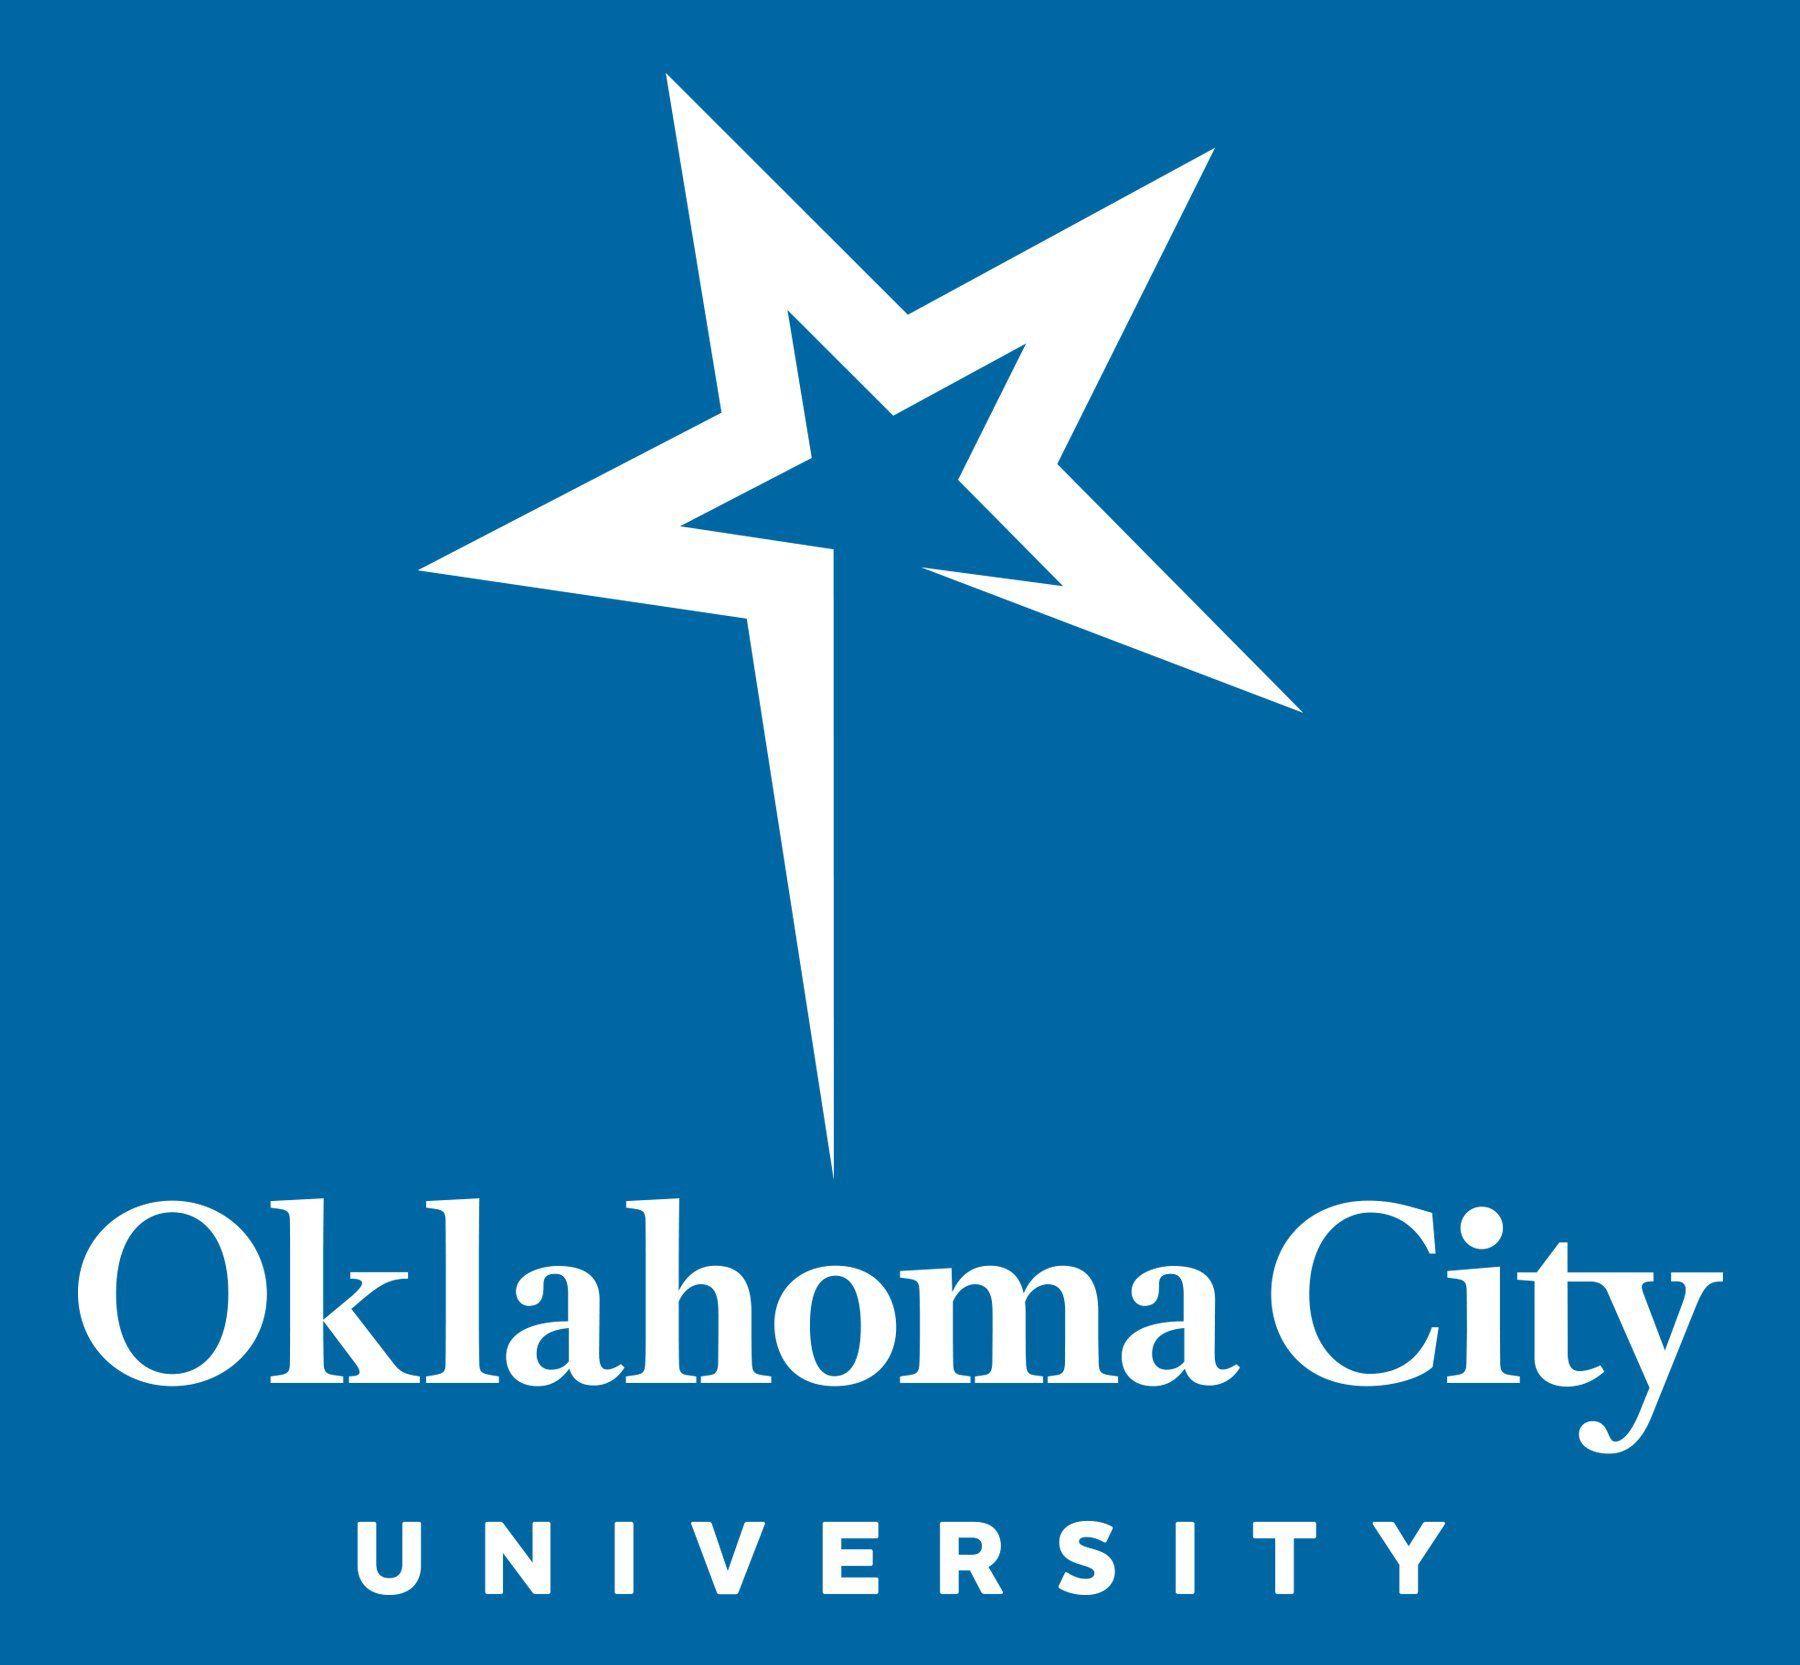 Ocu Logo - Official Logos - Oklahoma City University